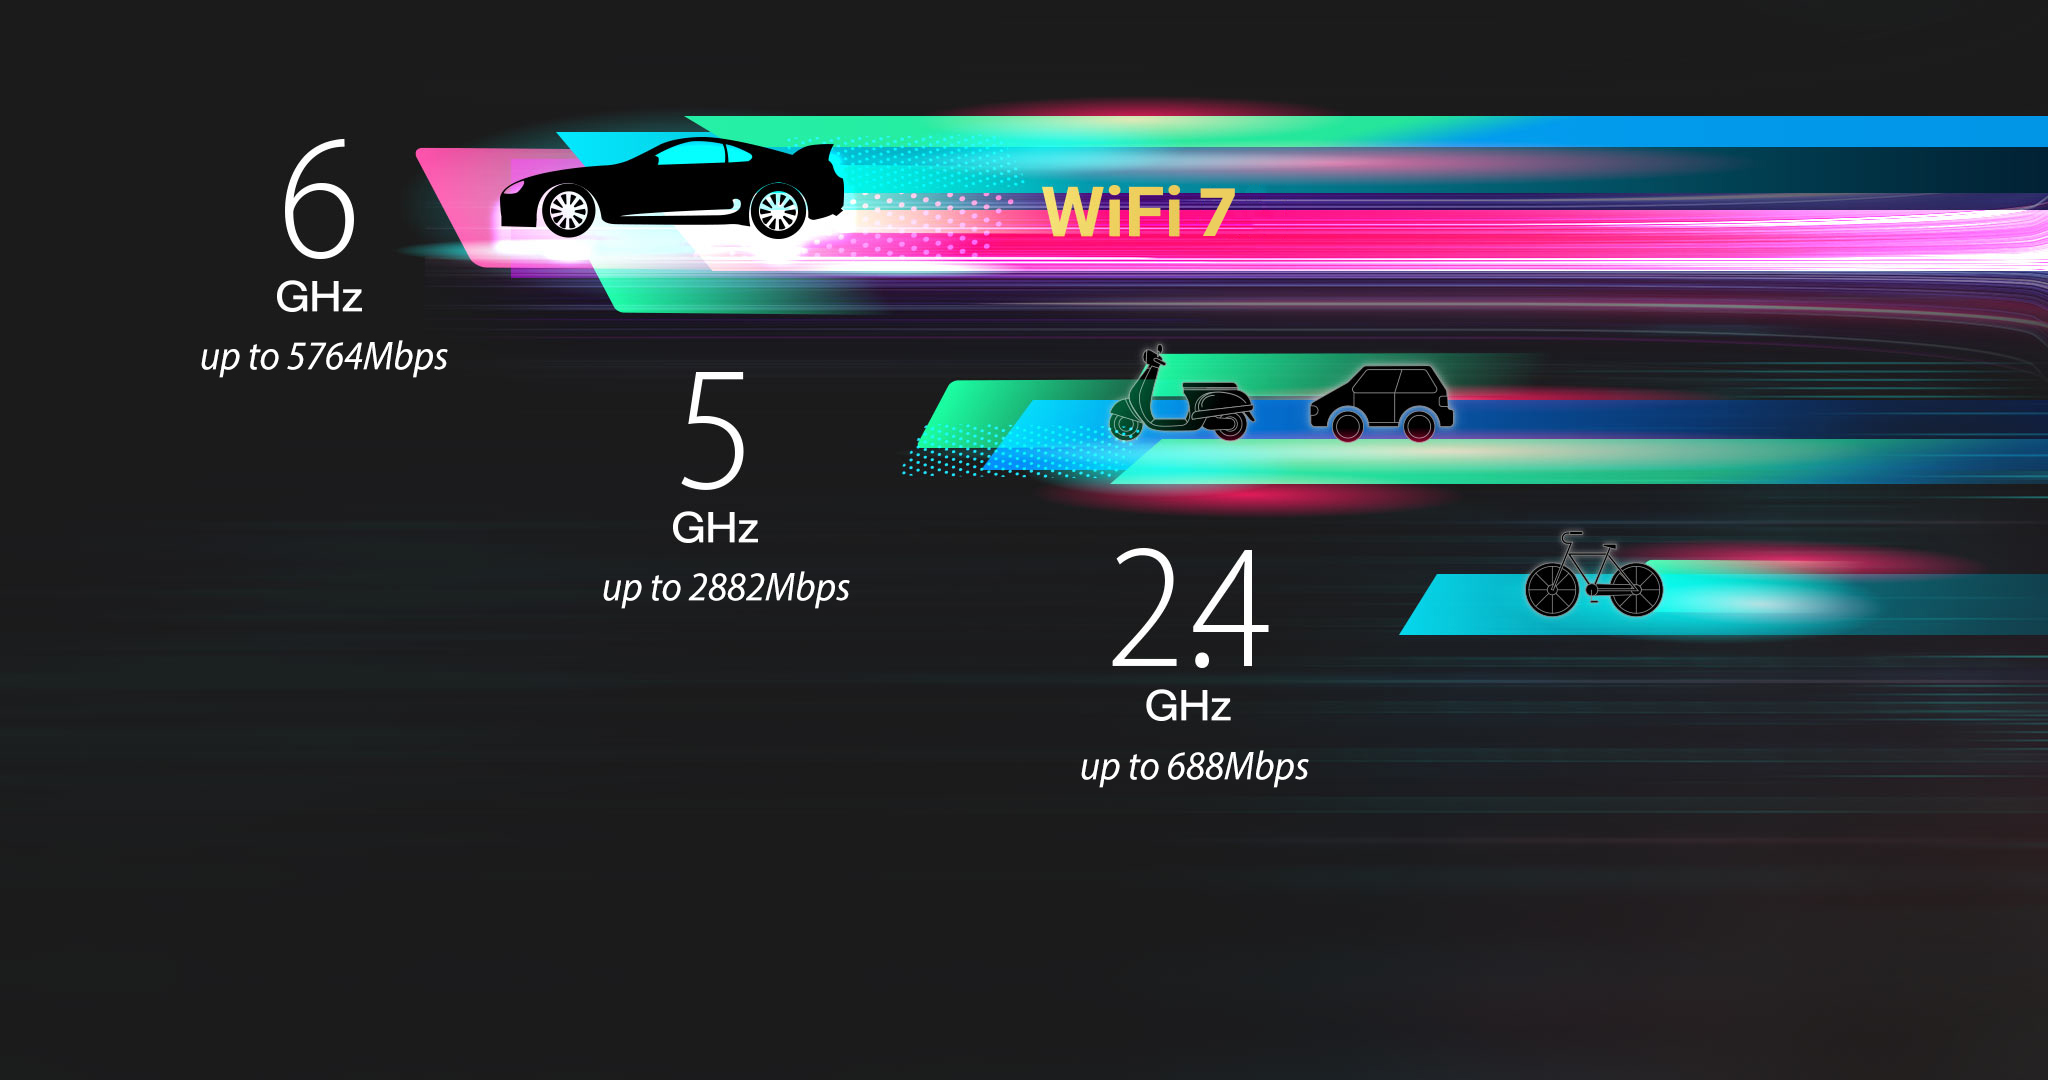 Pasmo Wi-Fi 7 6 GHz udostępniające kanały 320 MHz, zwiększa prędkość do 5764 Mb/s.